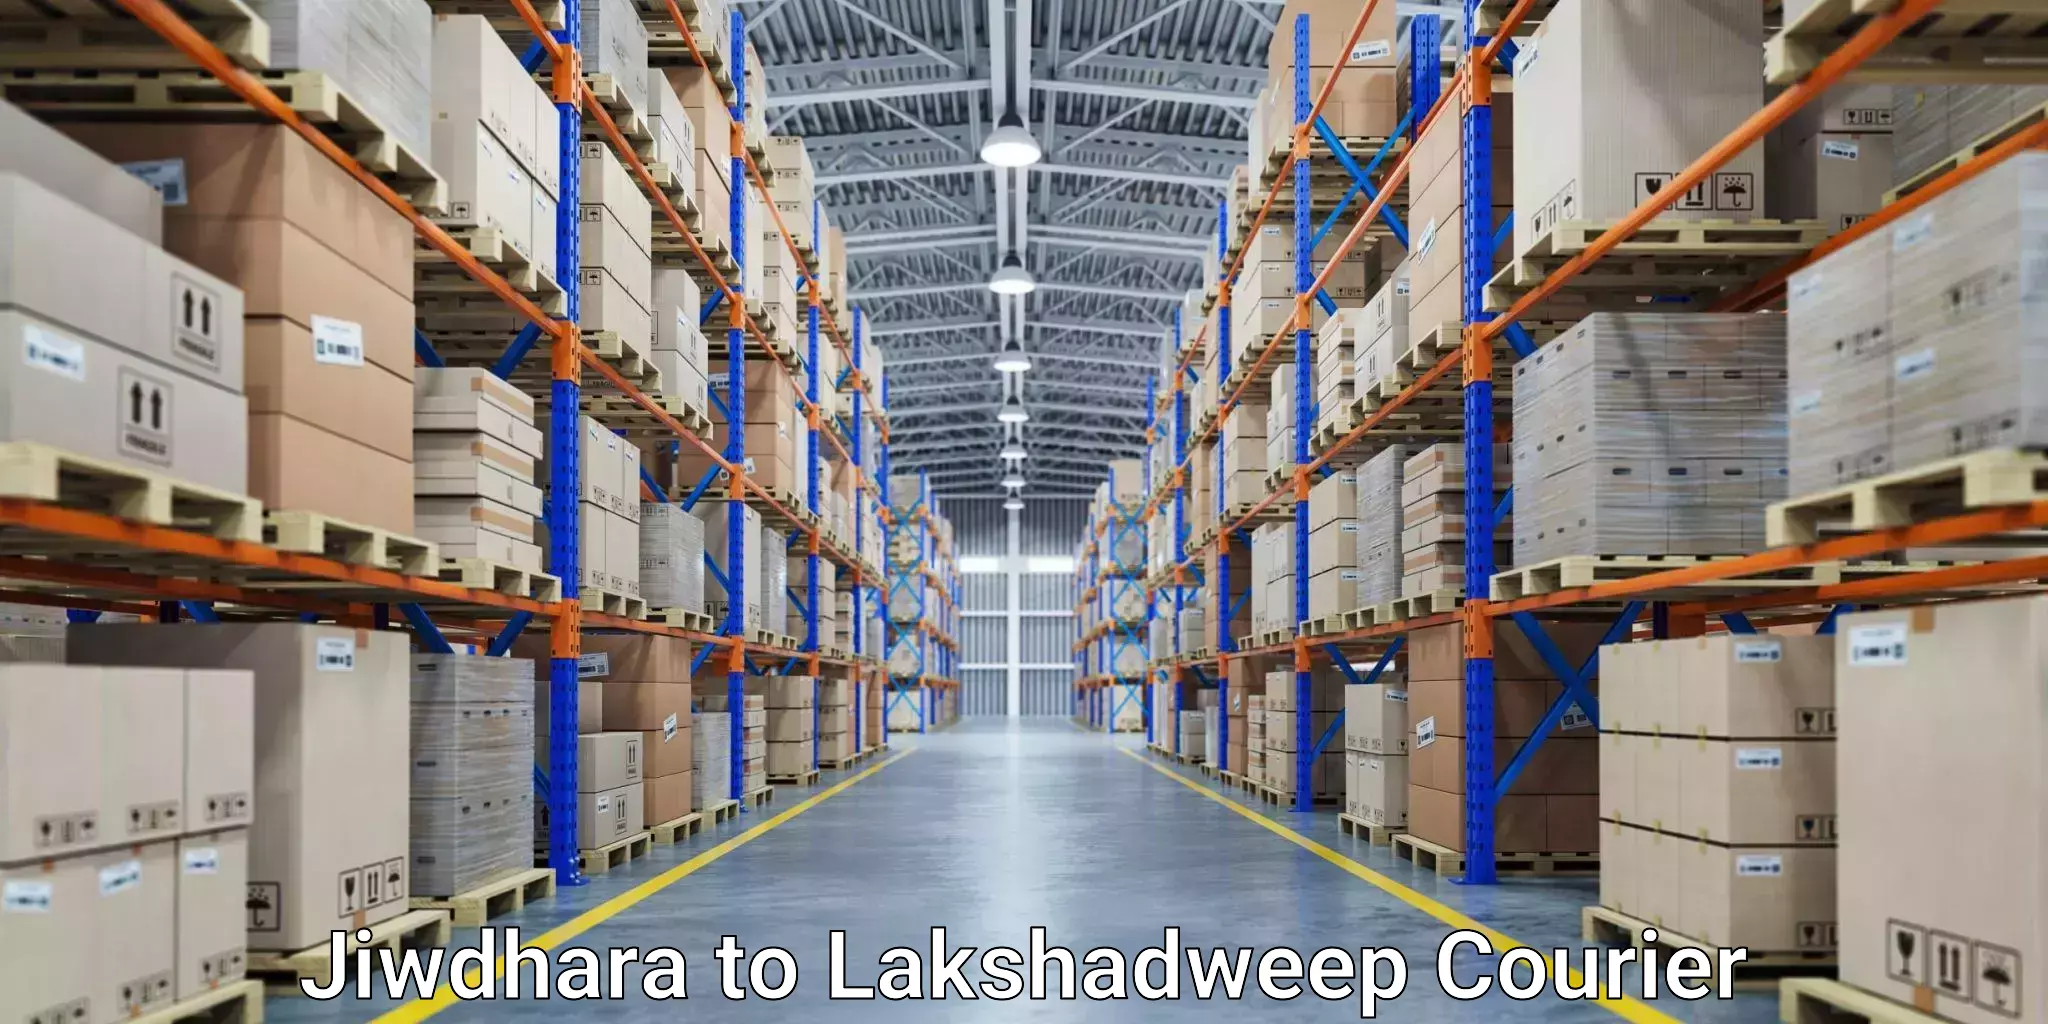 Global delivery options Jiwdhara to Lakshadweep